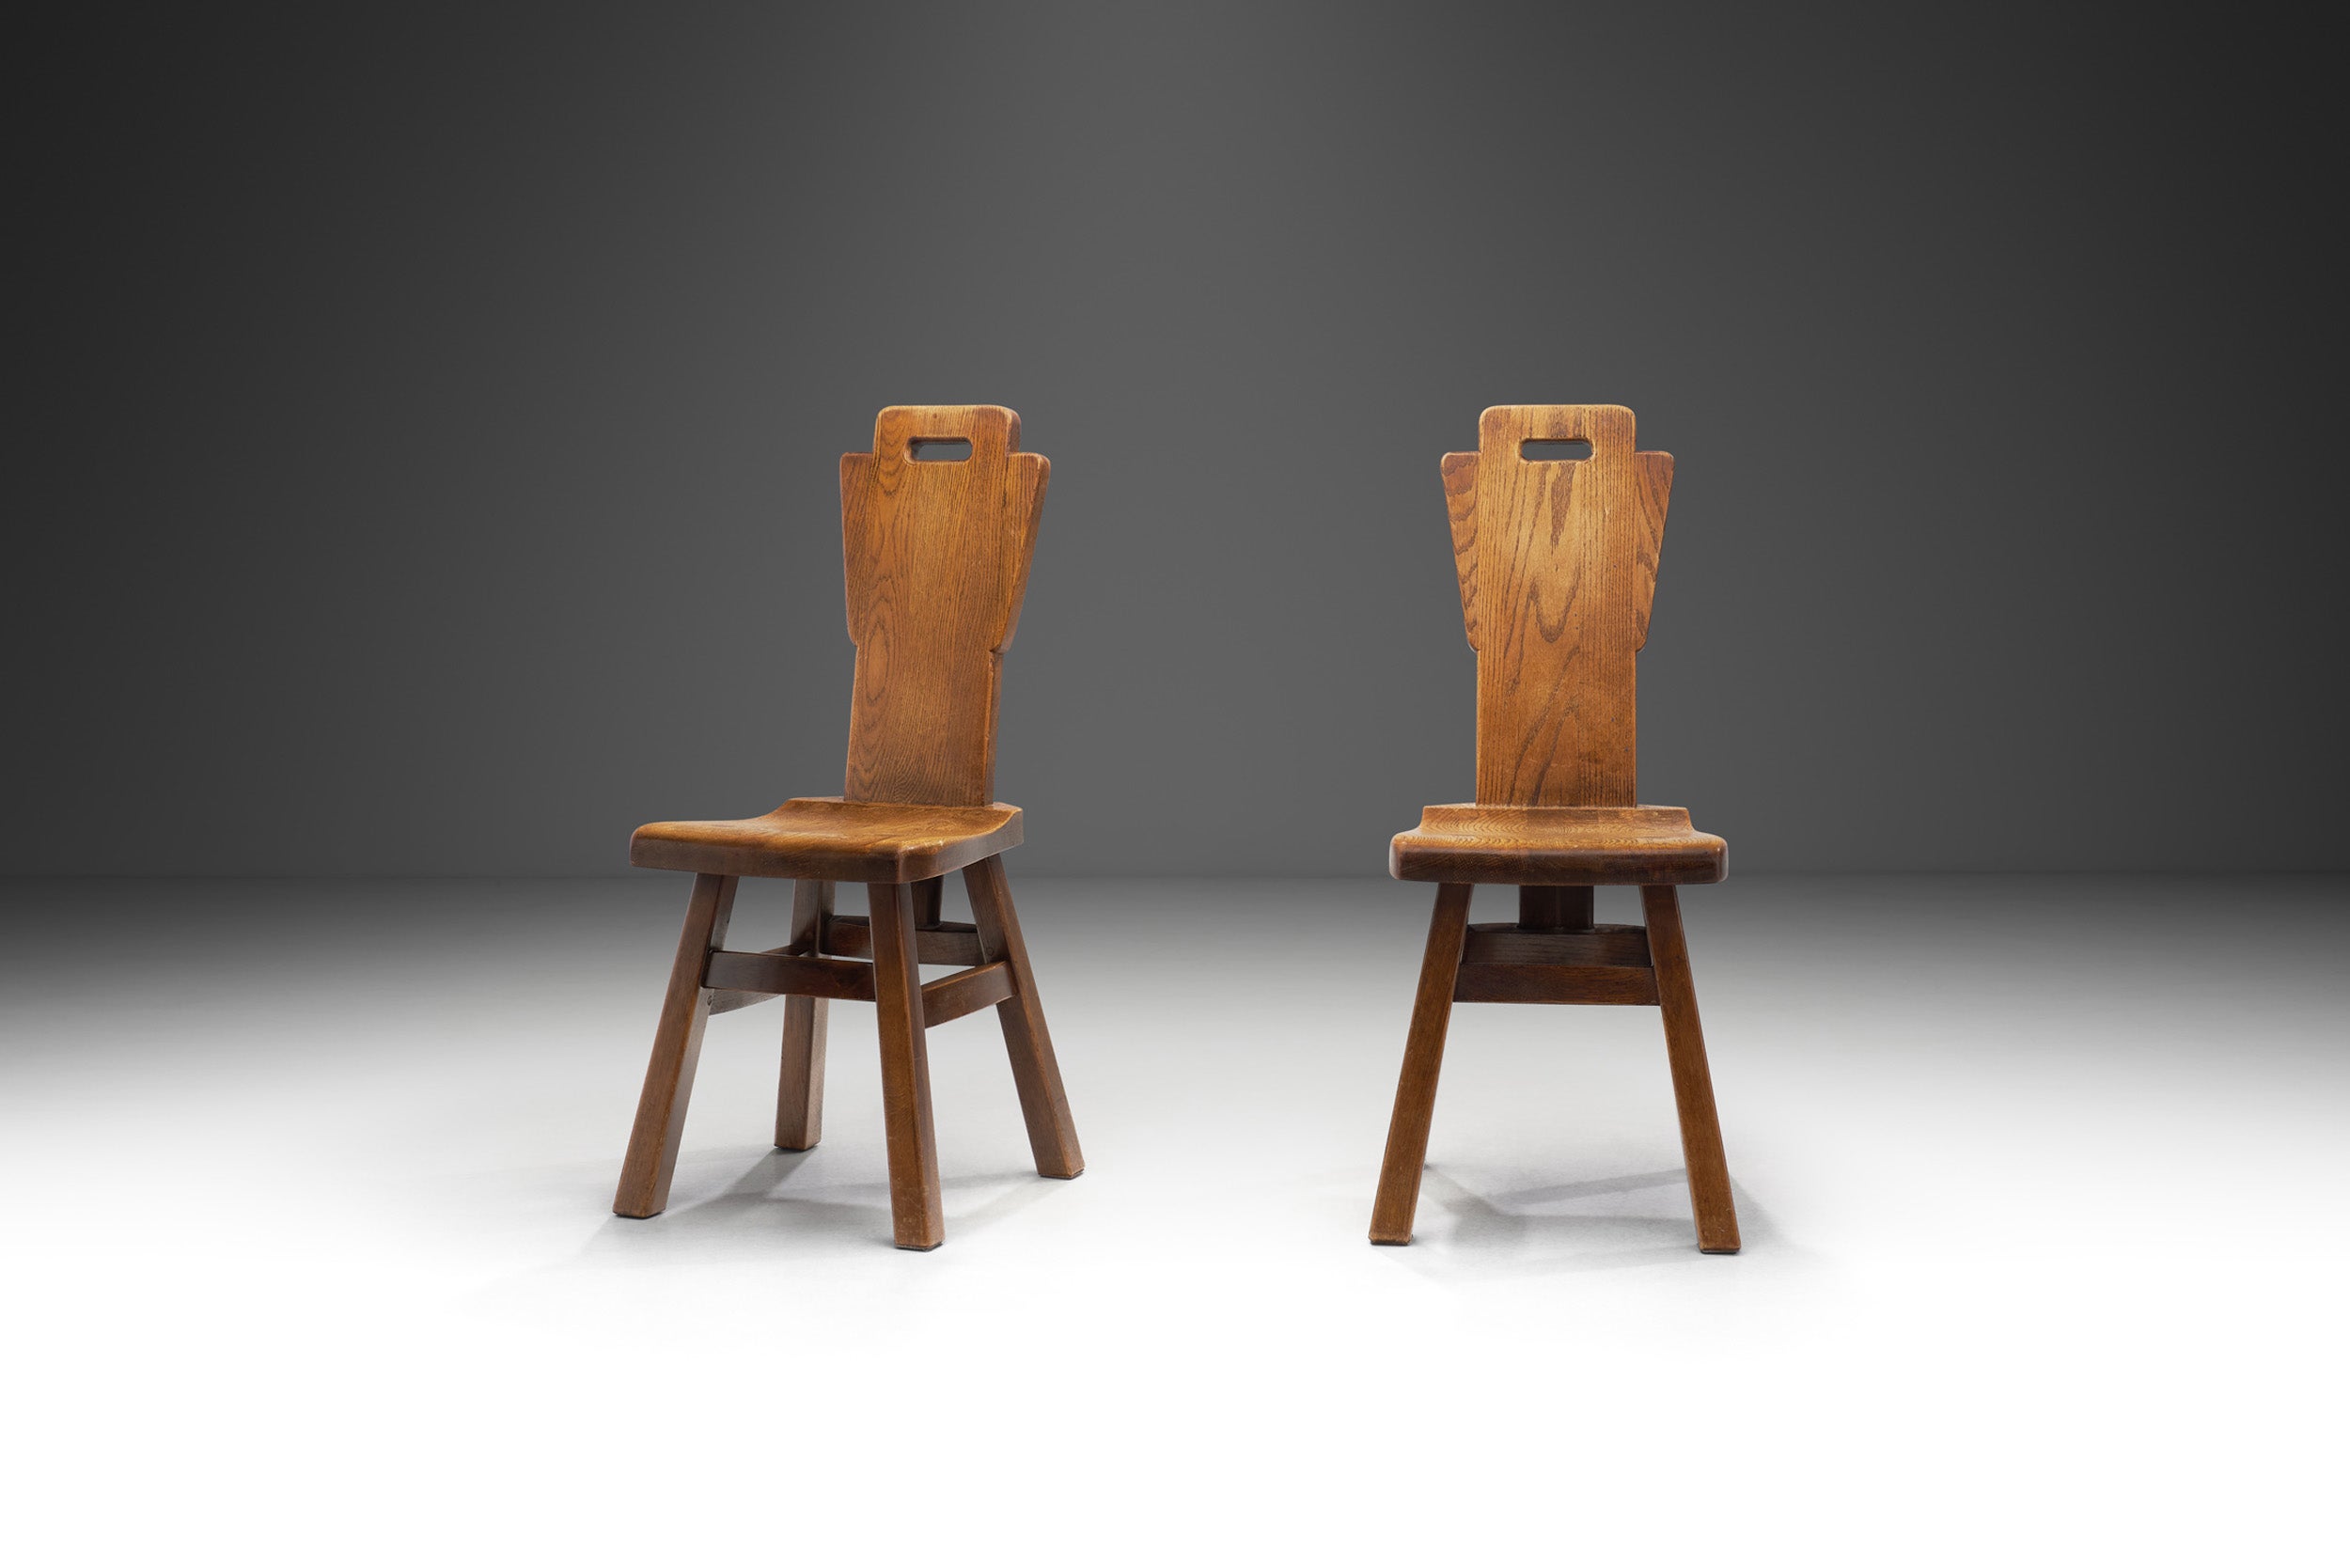 Belgian Brutalist Chairs in Heavy Oak, Belgium 1970s For Sale